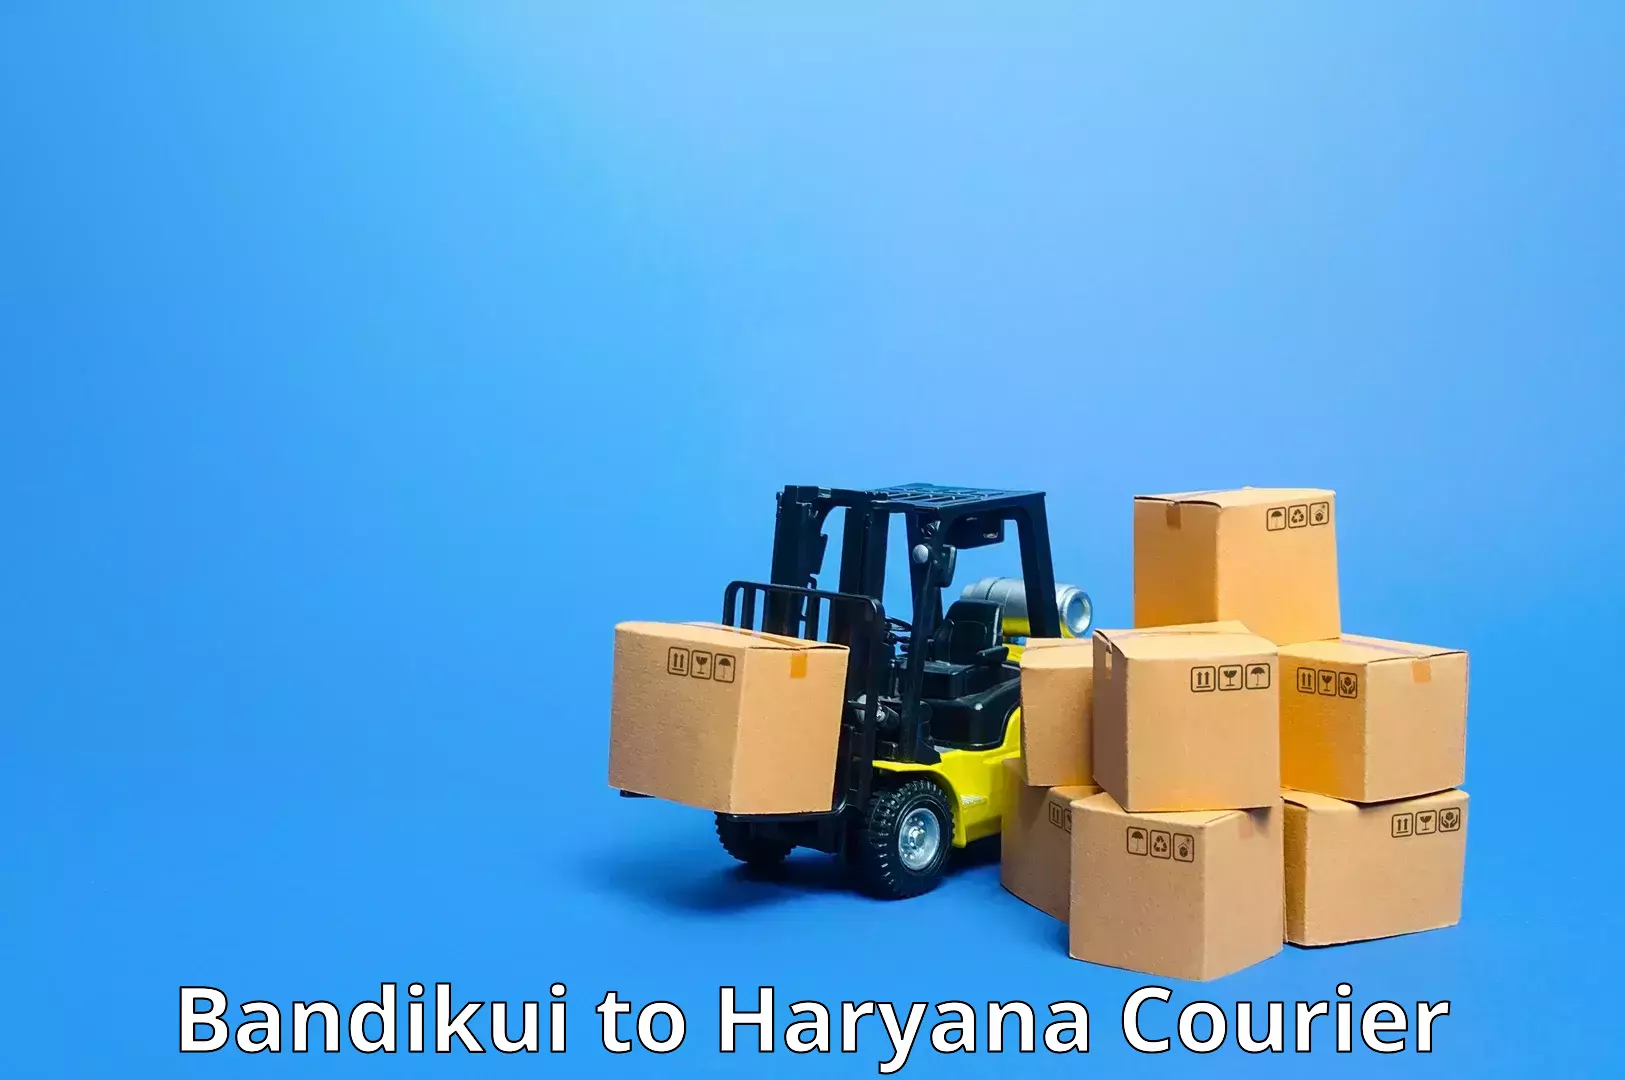 Efficient order fulfillment in Bandikui to Bilaspur Haryana